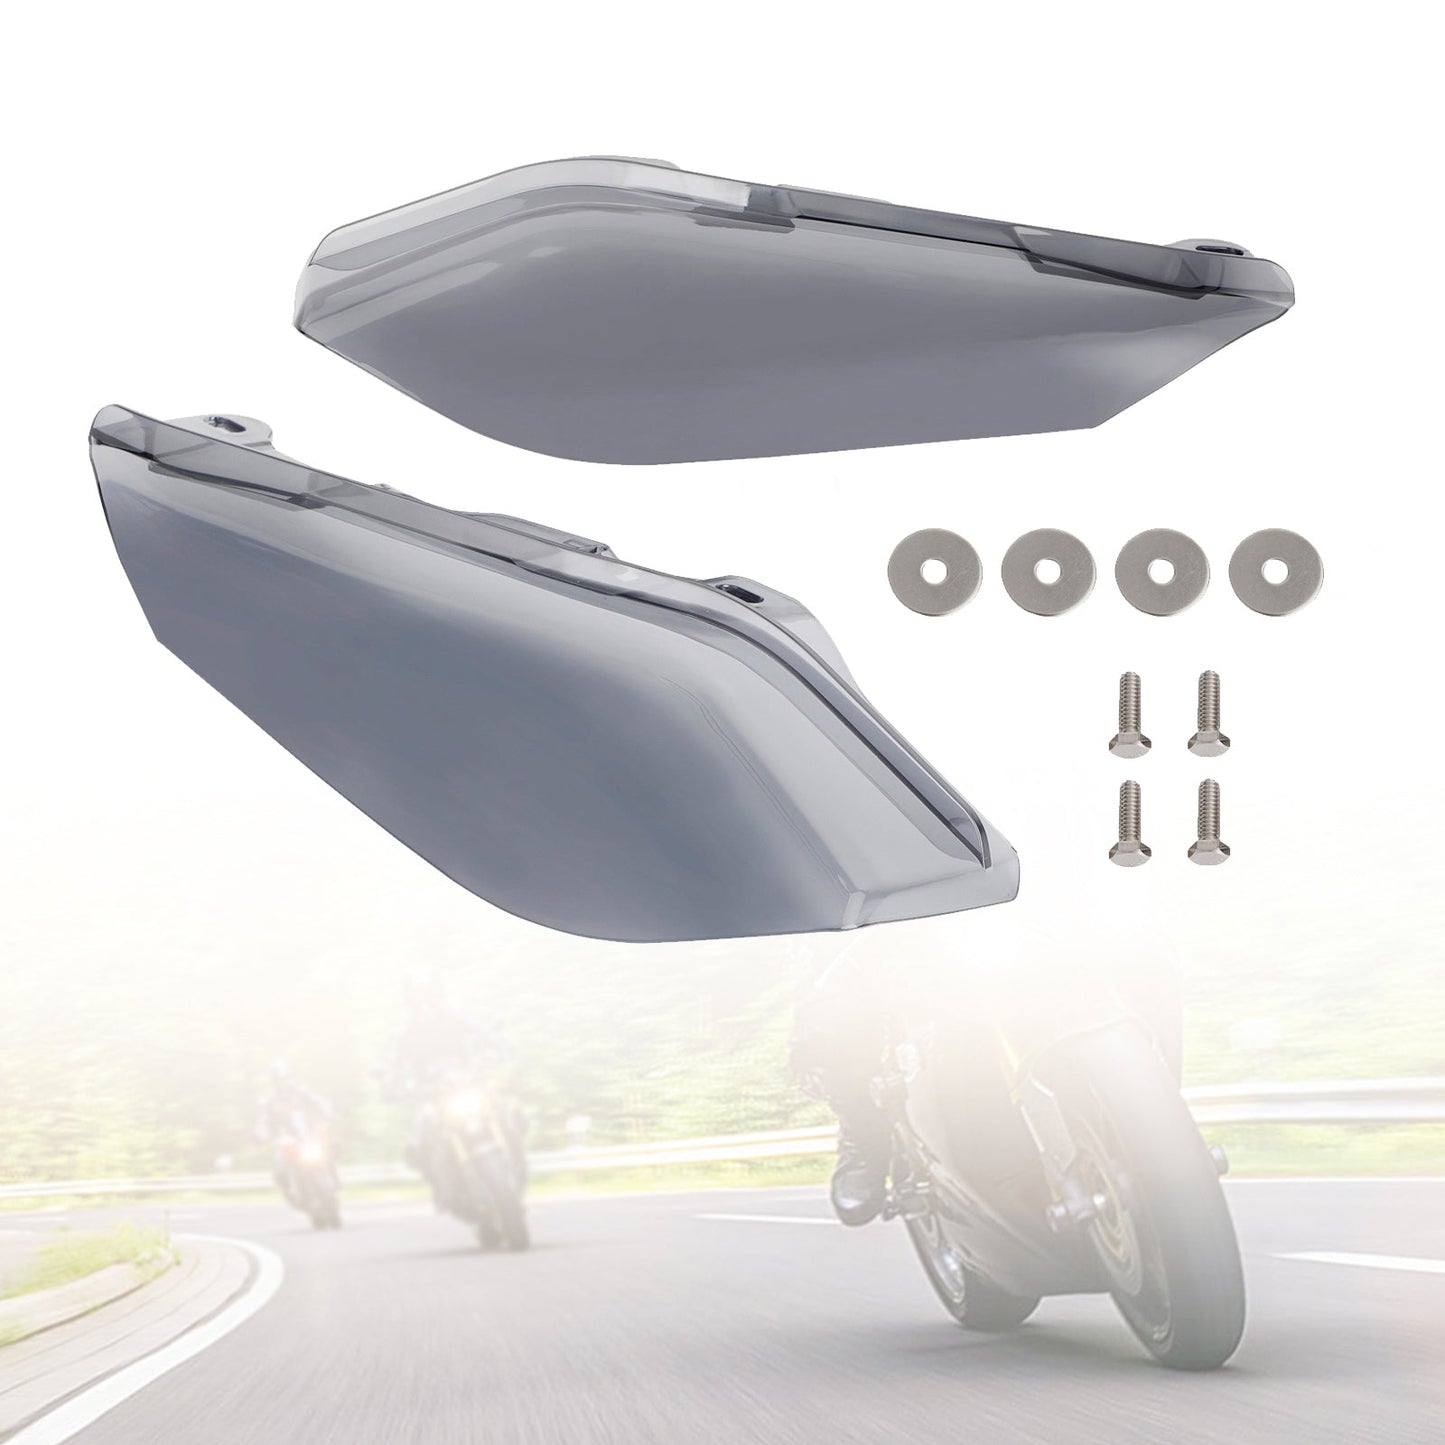 Air Heat Deflector Trim Shield für Mittelrahmen, passend für 09-16 Touring- und Trike-Modelle Generic